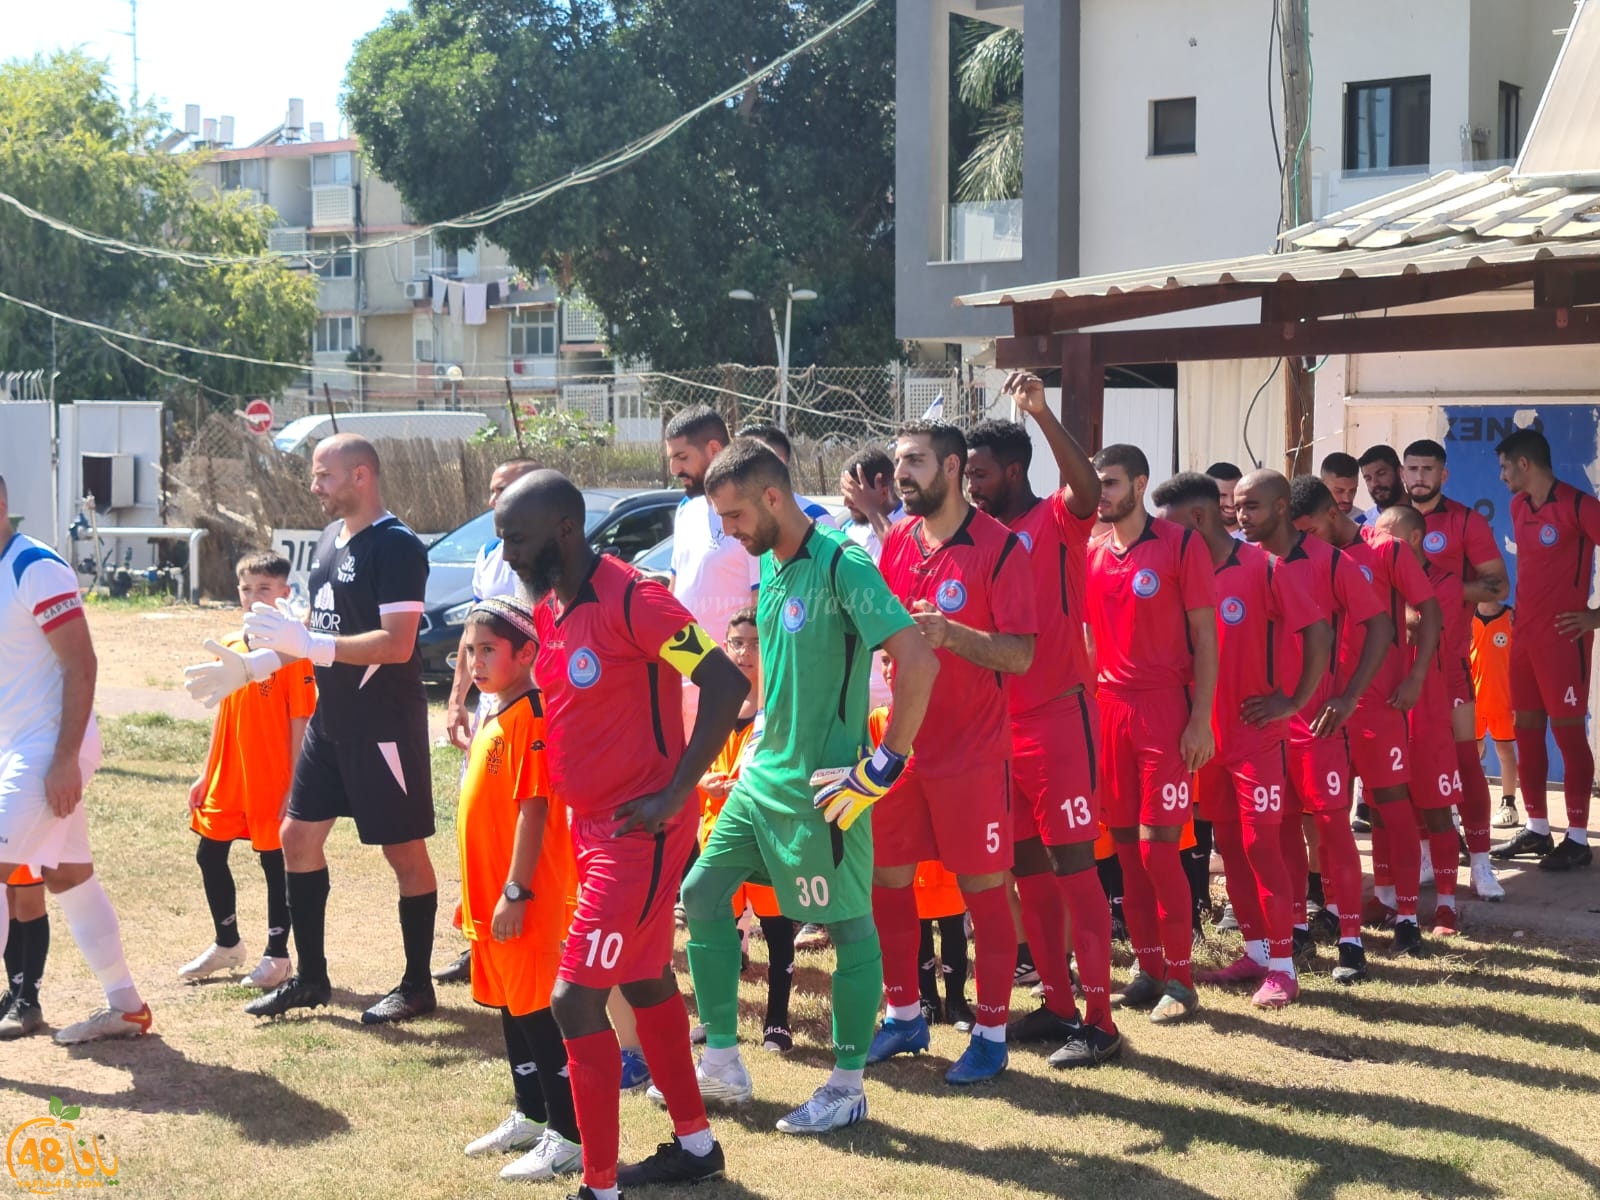 فوز فريق أبناء يافا في أول مباراة للموسم الكروي الجديد 